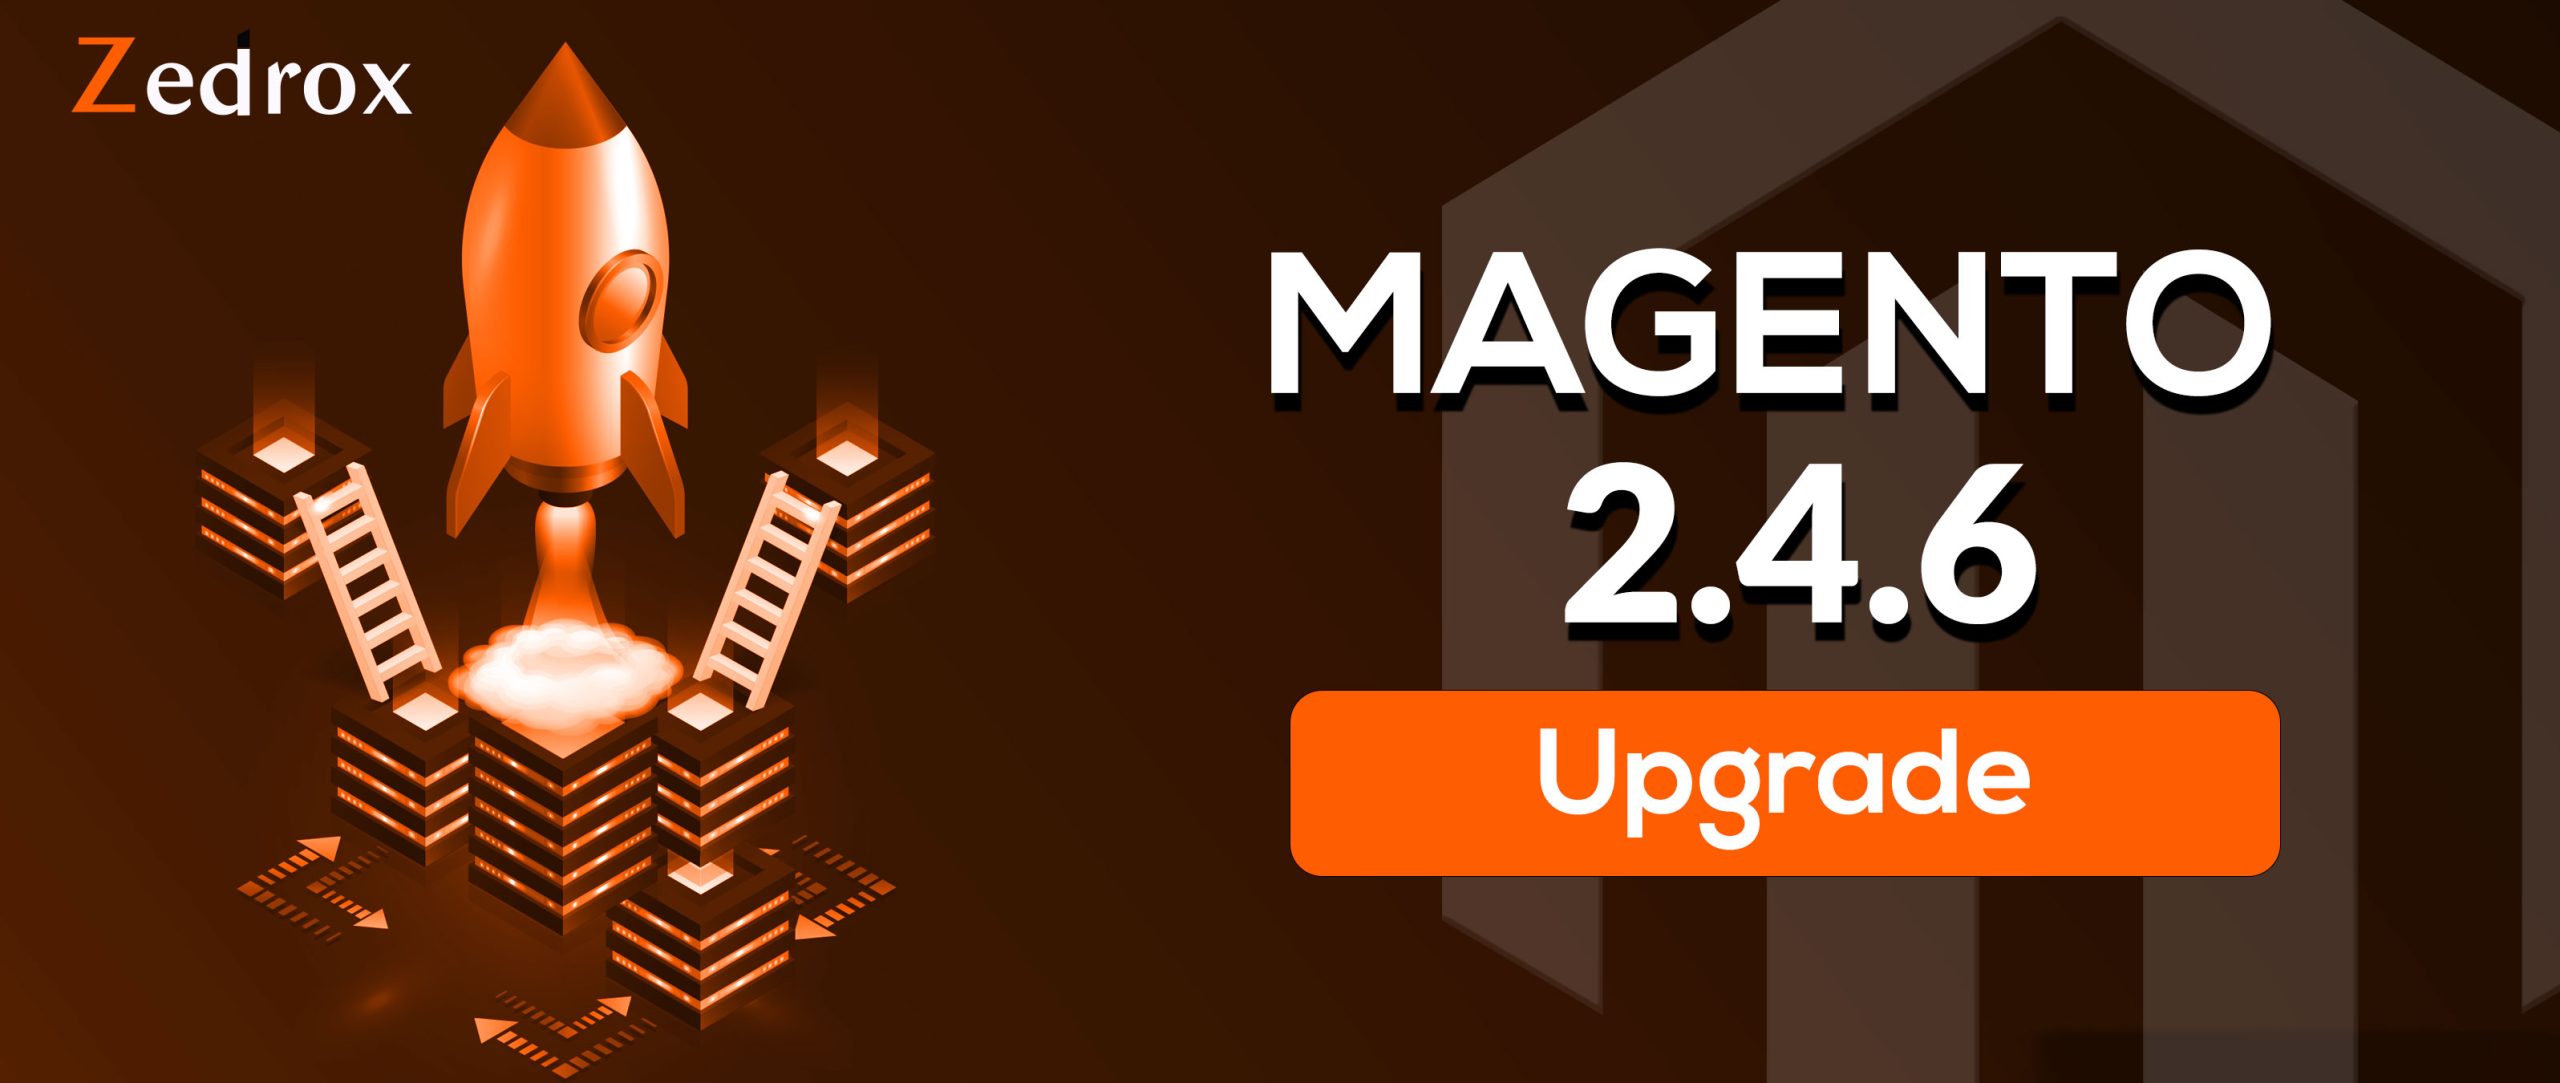 magento 2.4.6 upgrade